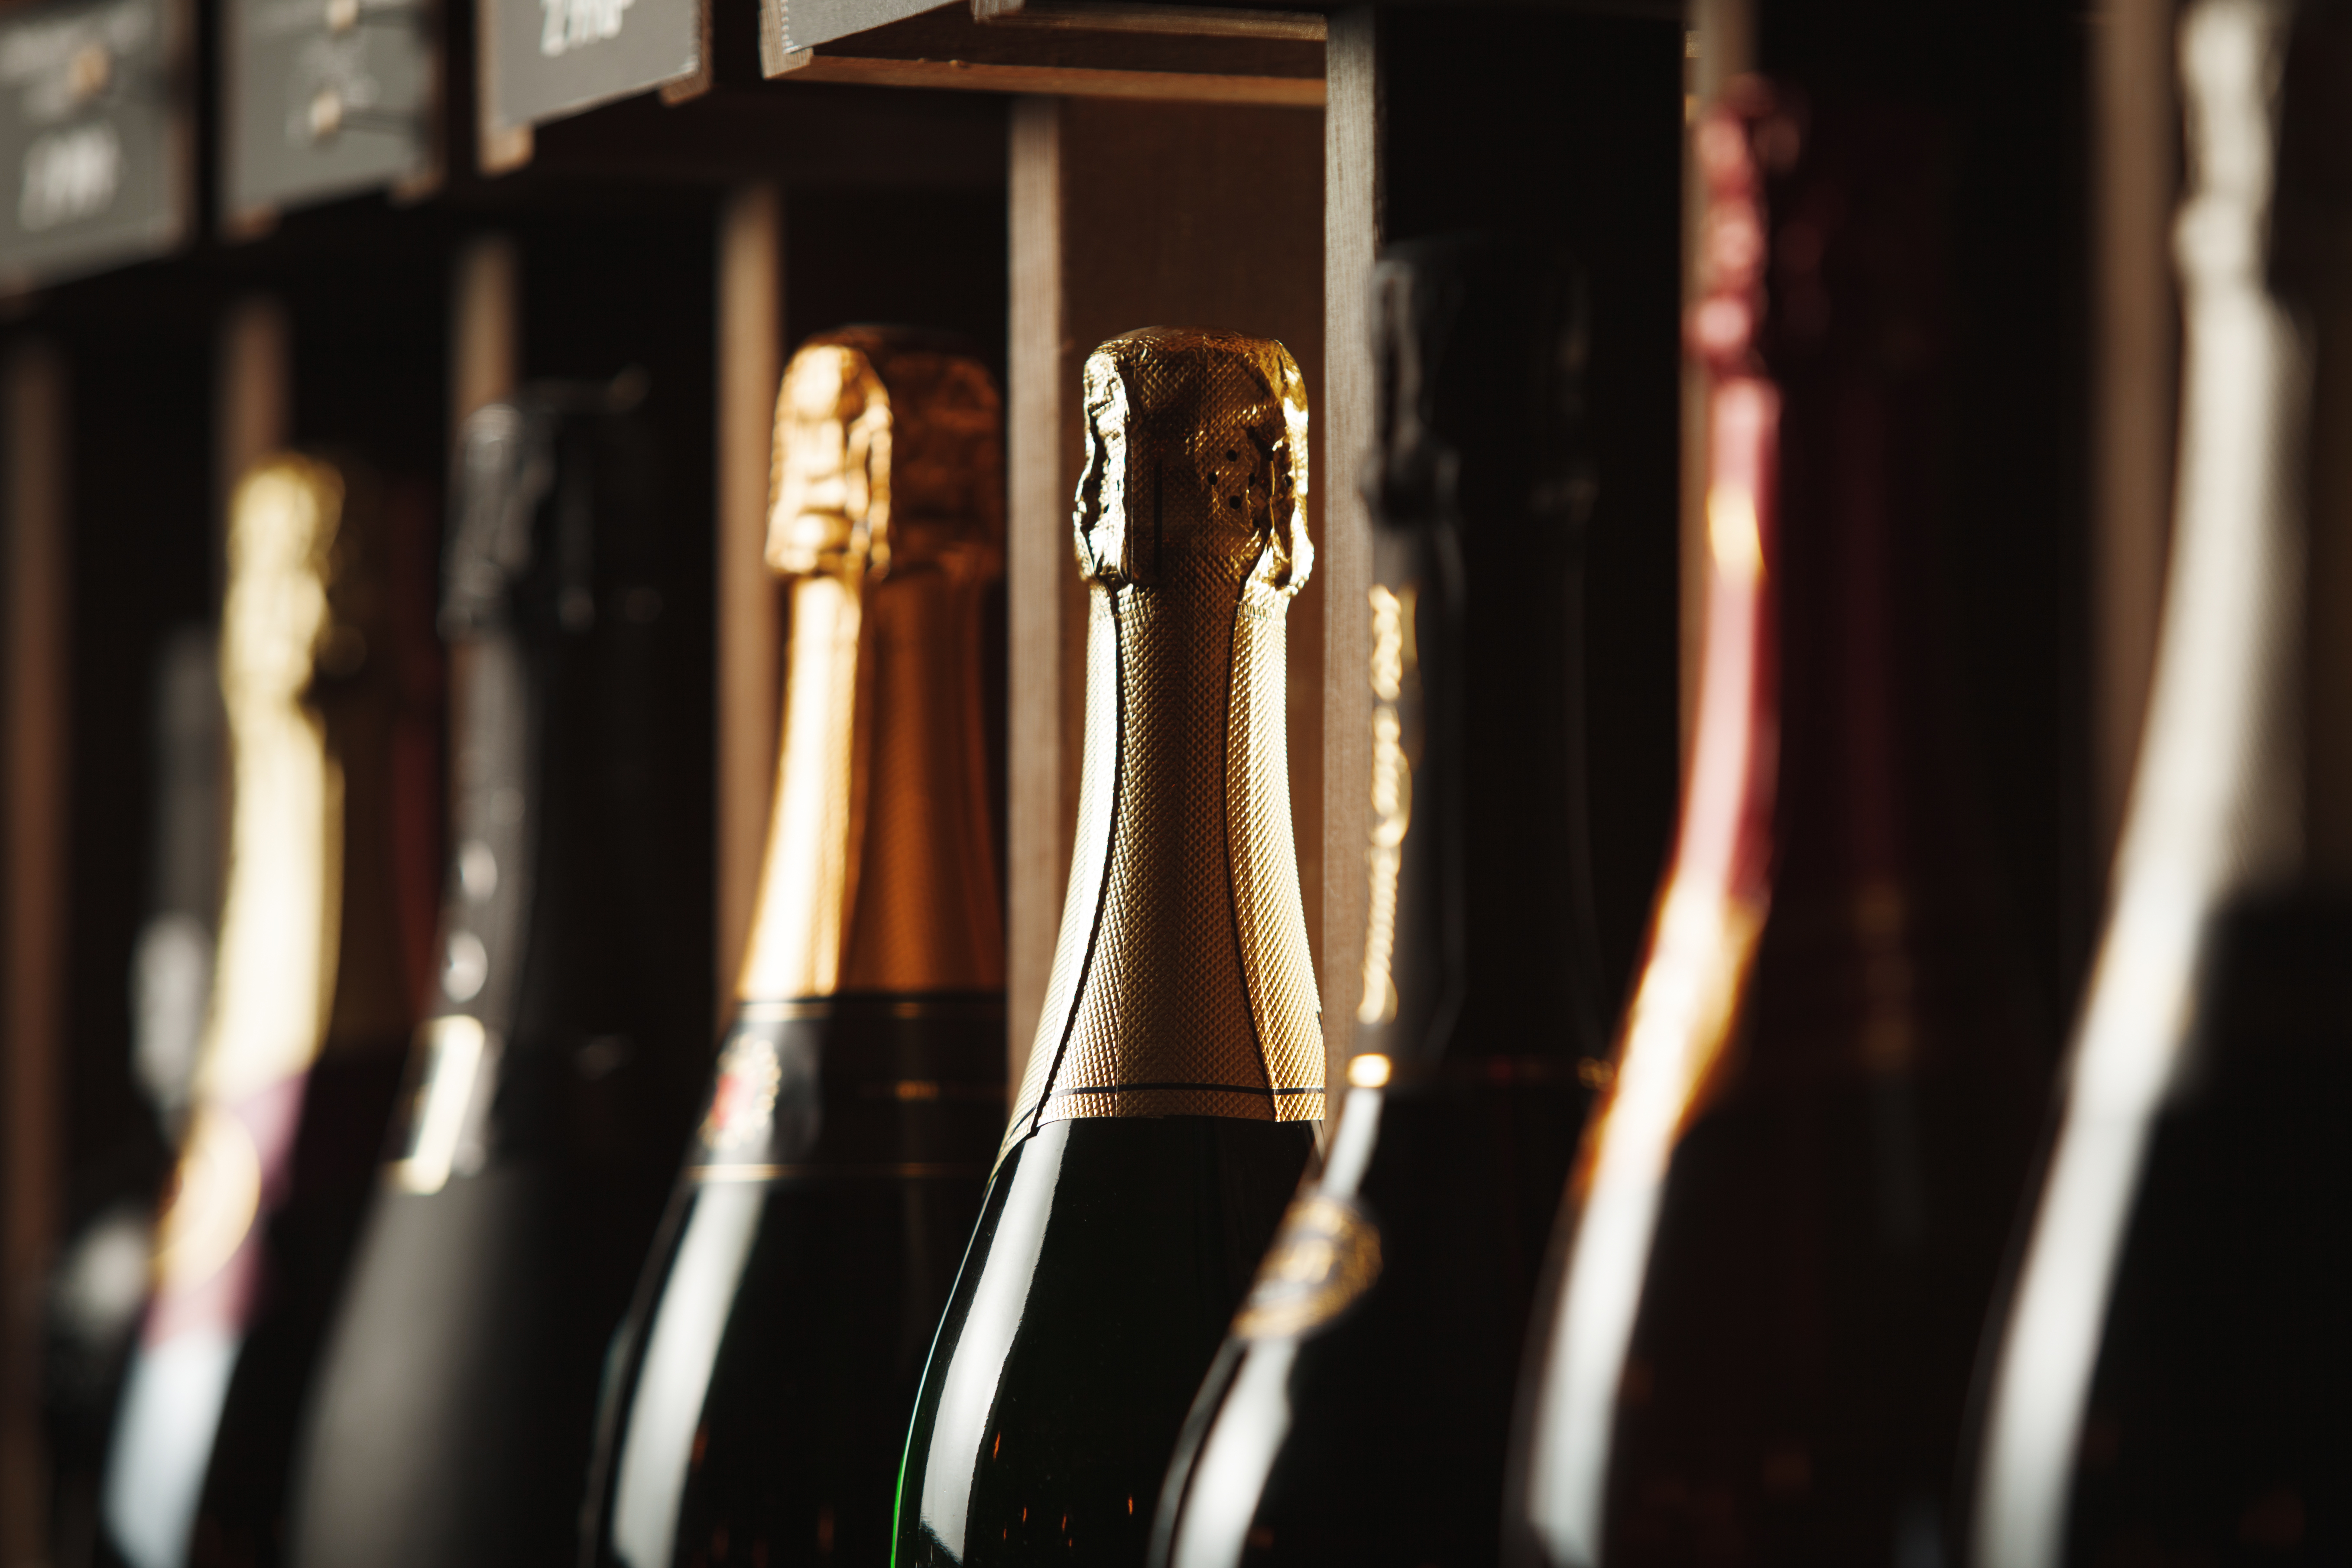     L’Autorité de la concurrence sanctionne deux grossistes-importateurs de champagne

